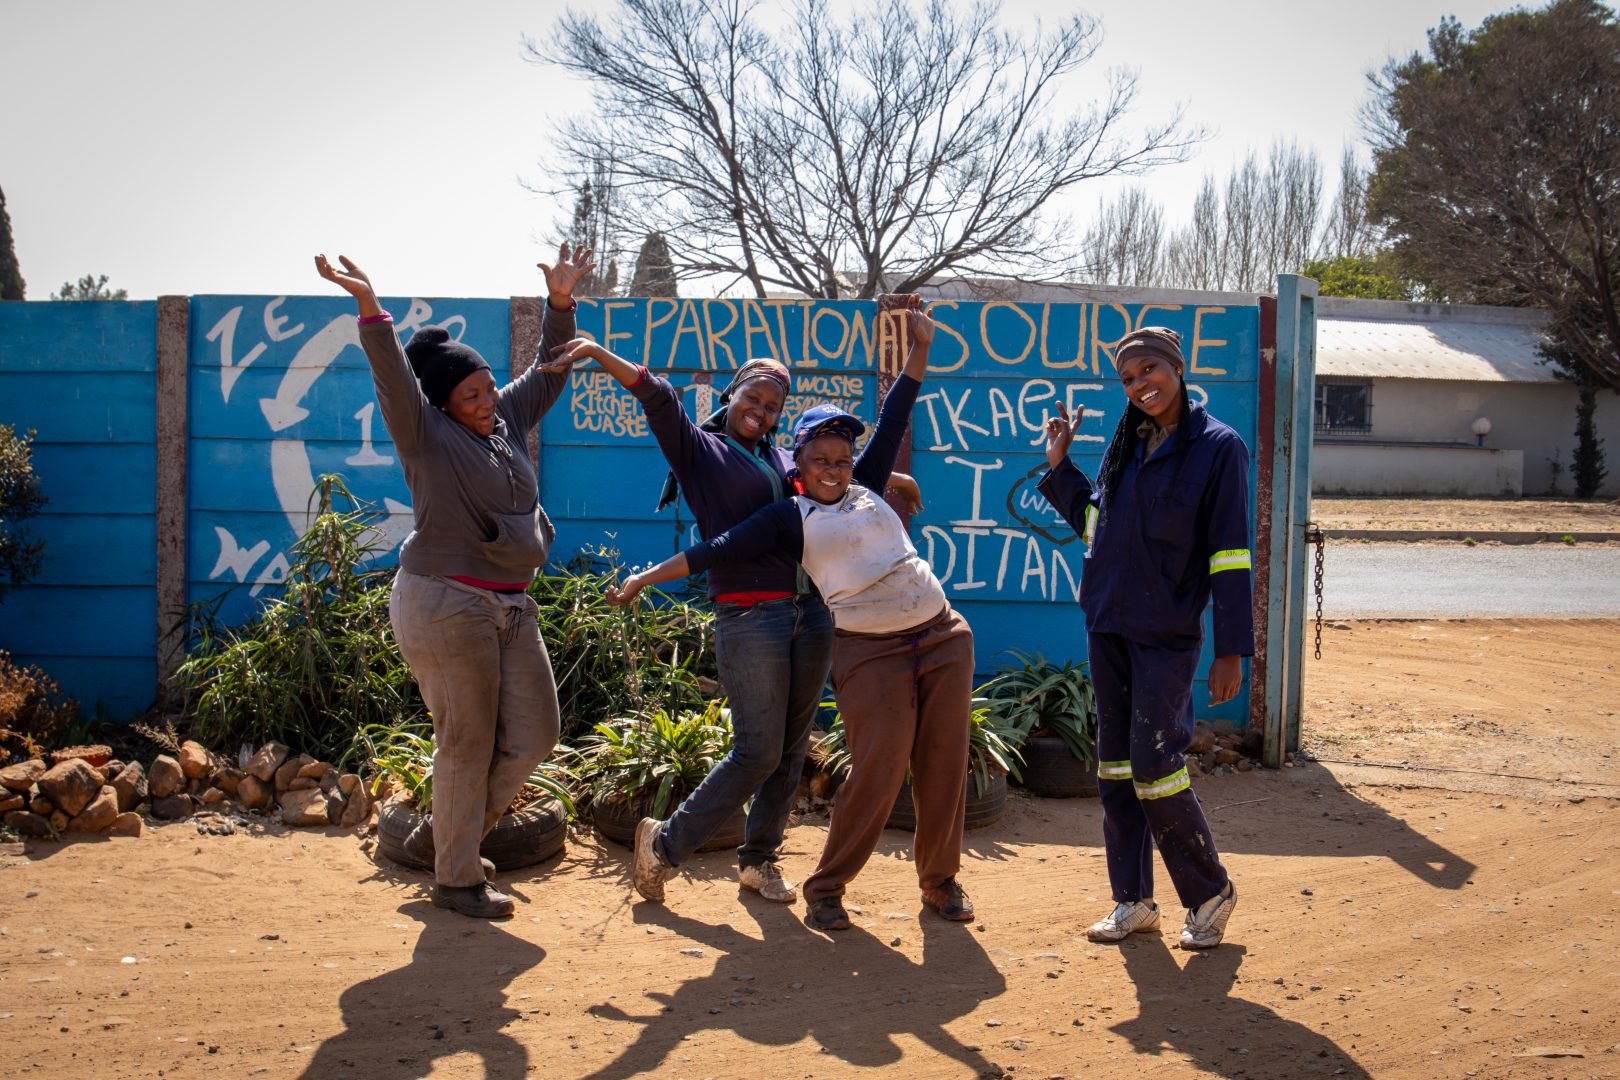 Recicladores de África posando de manera divertida y despreocupada con los brazos en alto frente a una pared azul.